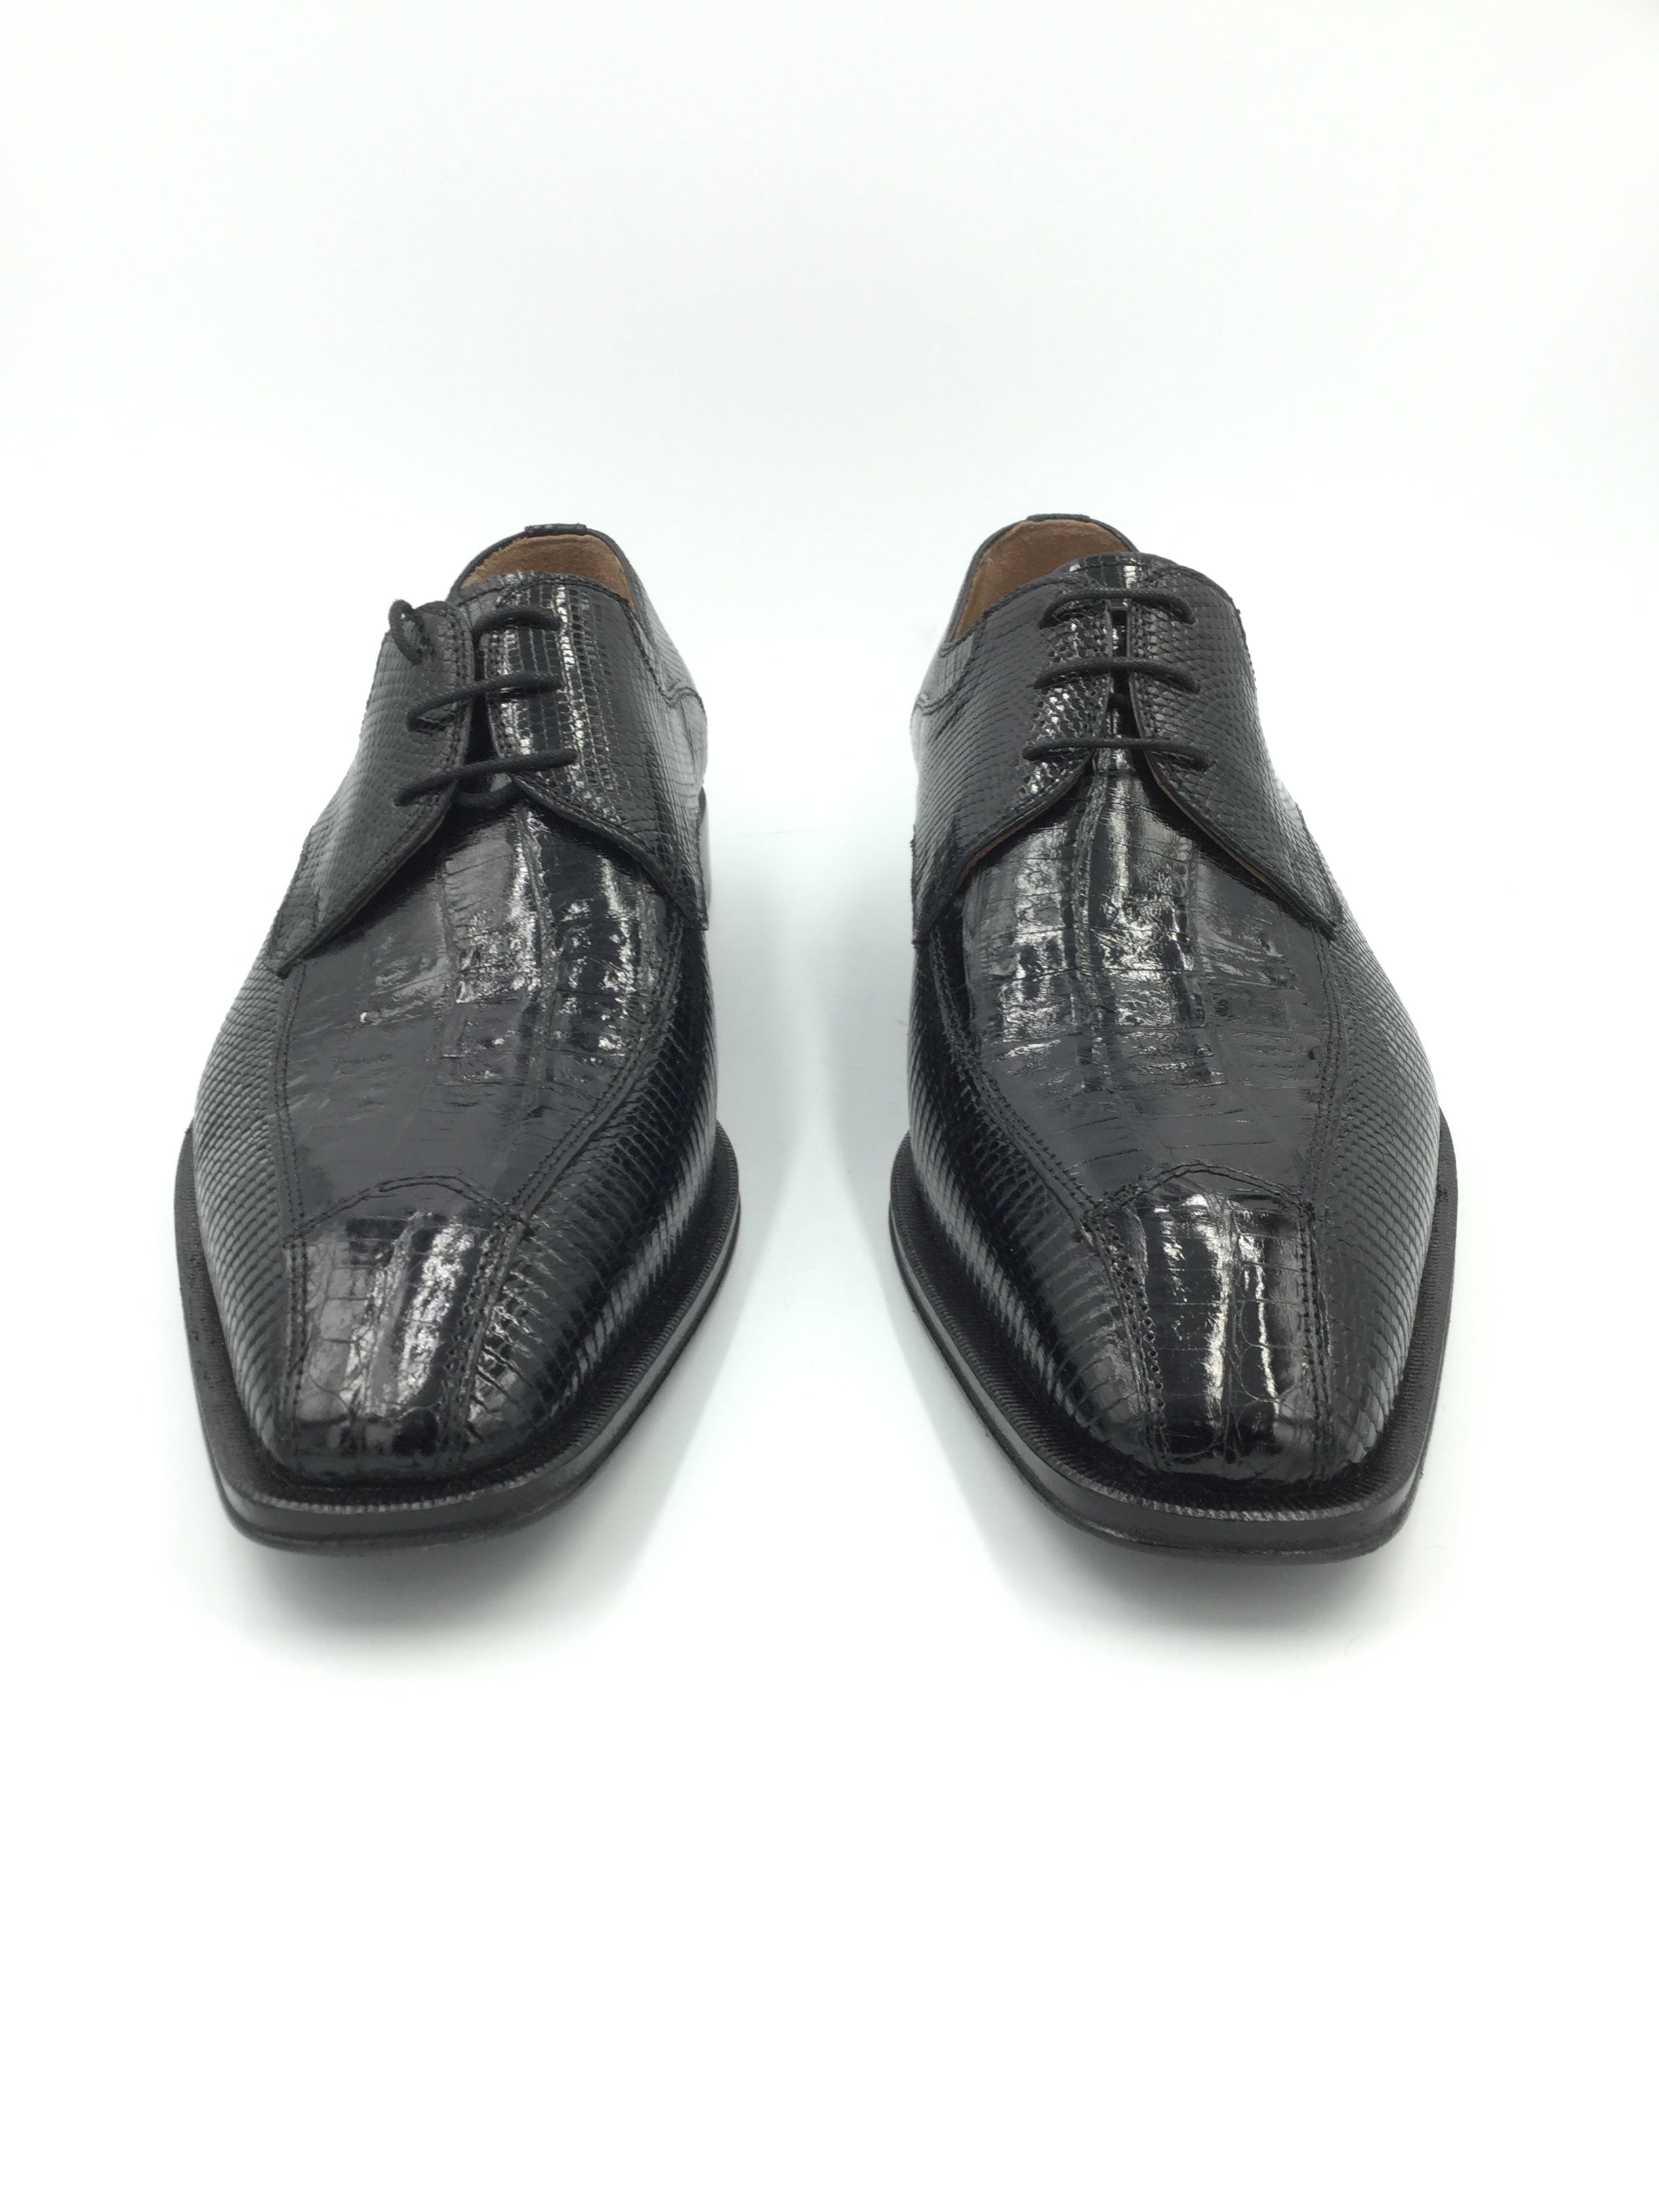 David Eden Unique Genuine Crocodile and Lizard Leather Black Shoe Size 9